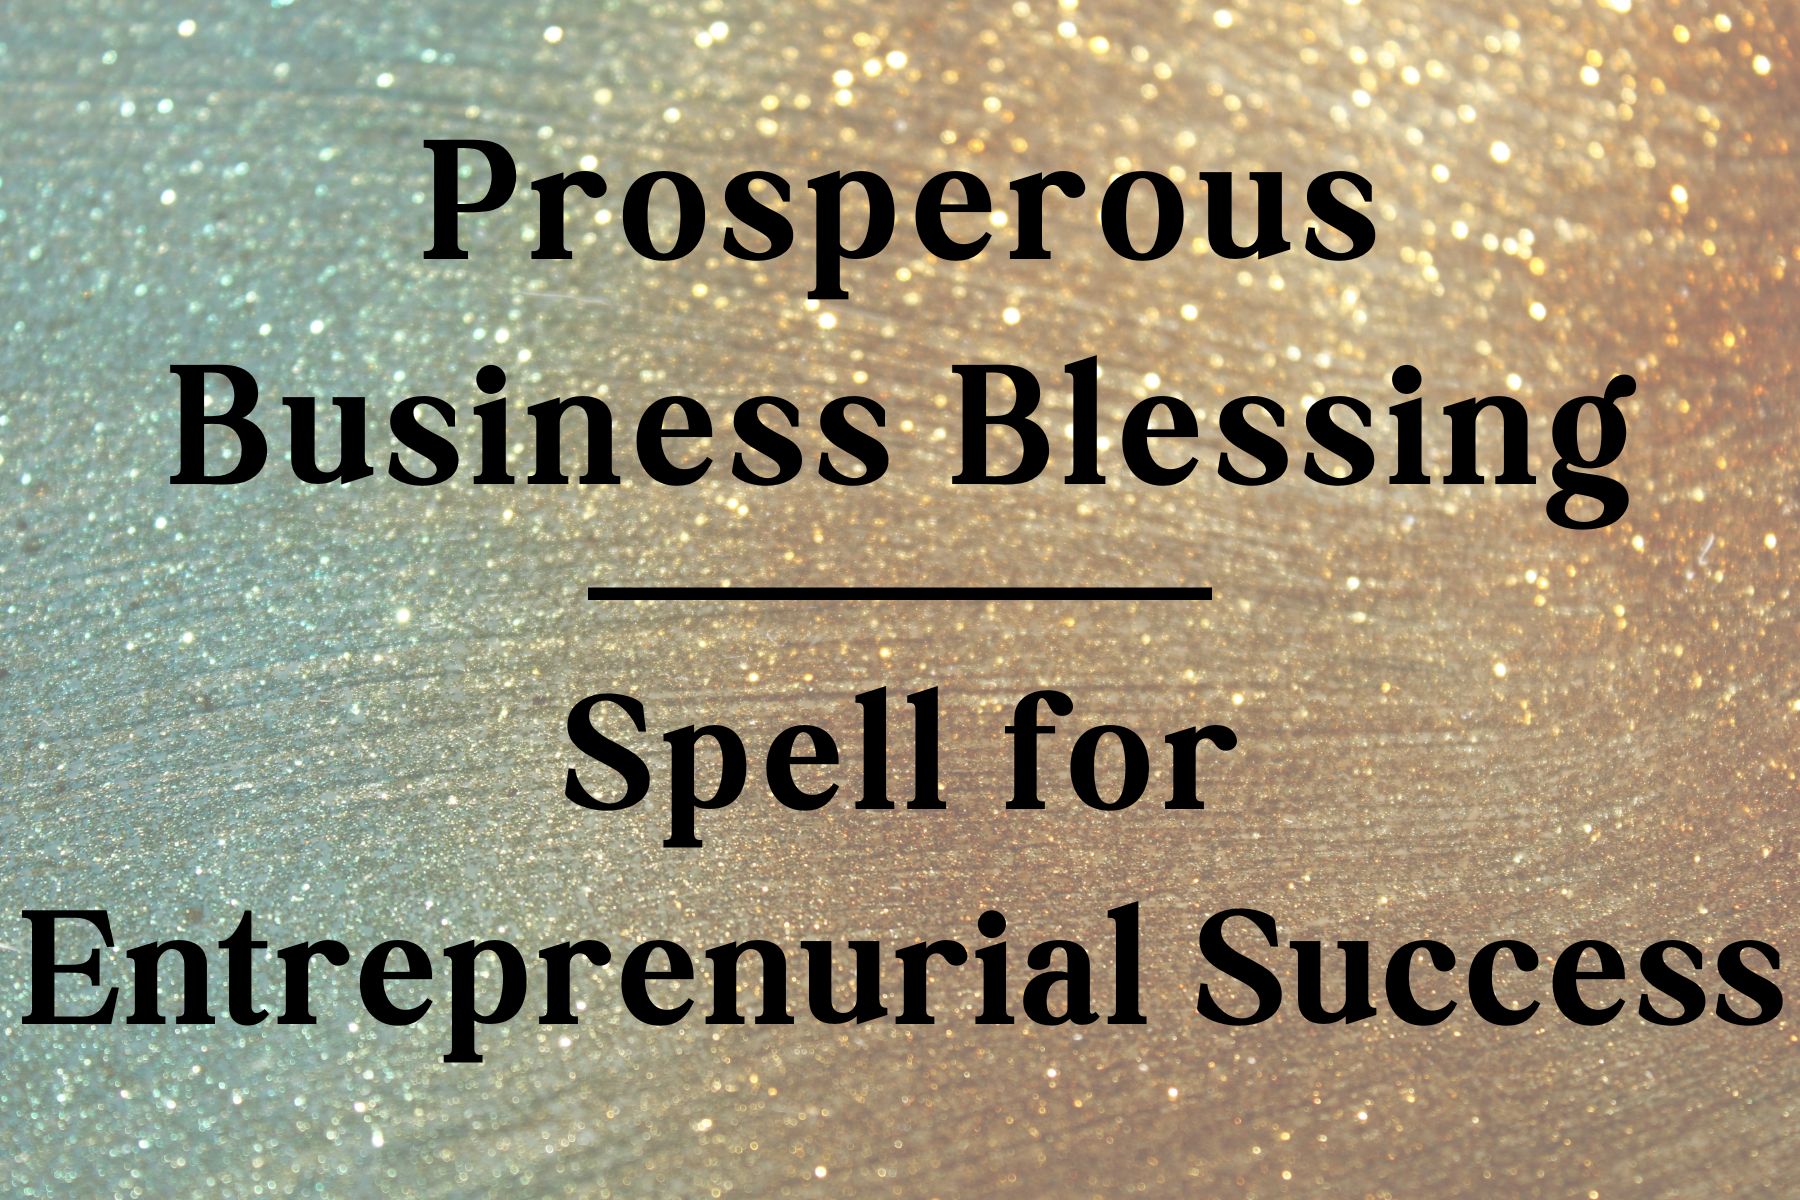 Prosperous Business Blessing: Spell for Entrepreneurial Success